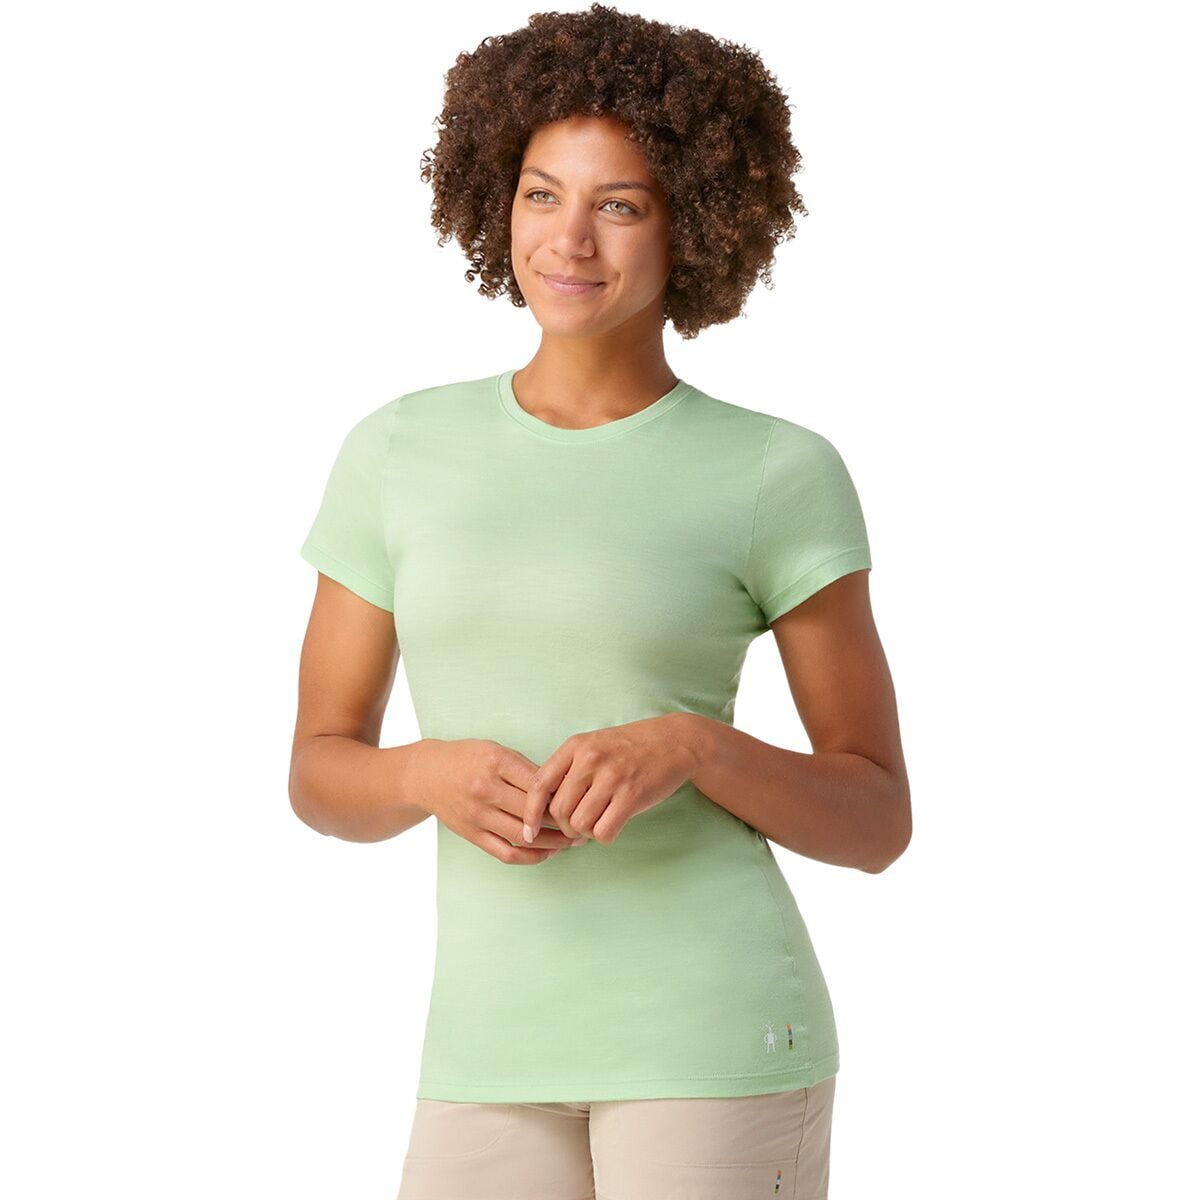 Smartwool Merino Short-Sleeve T-Shirt - Women's